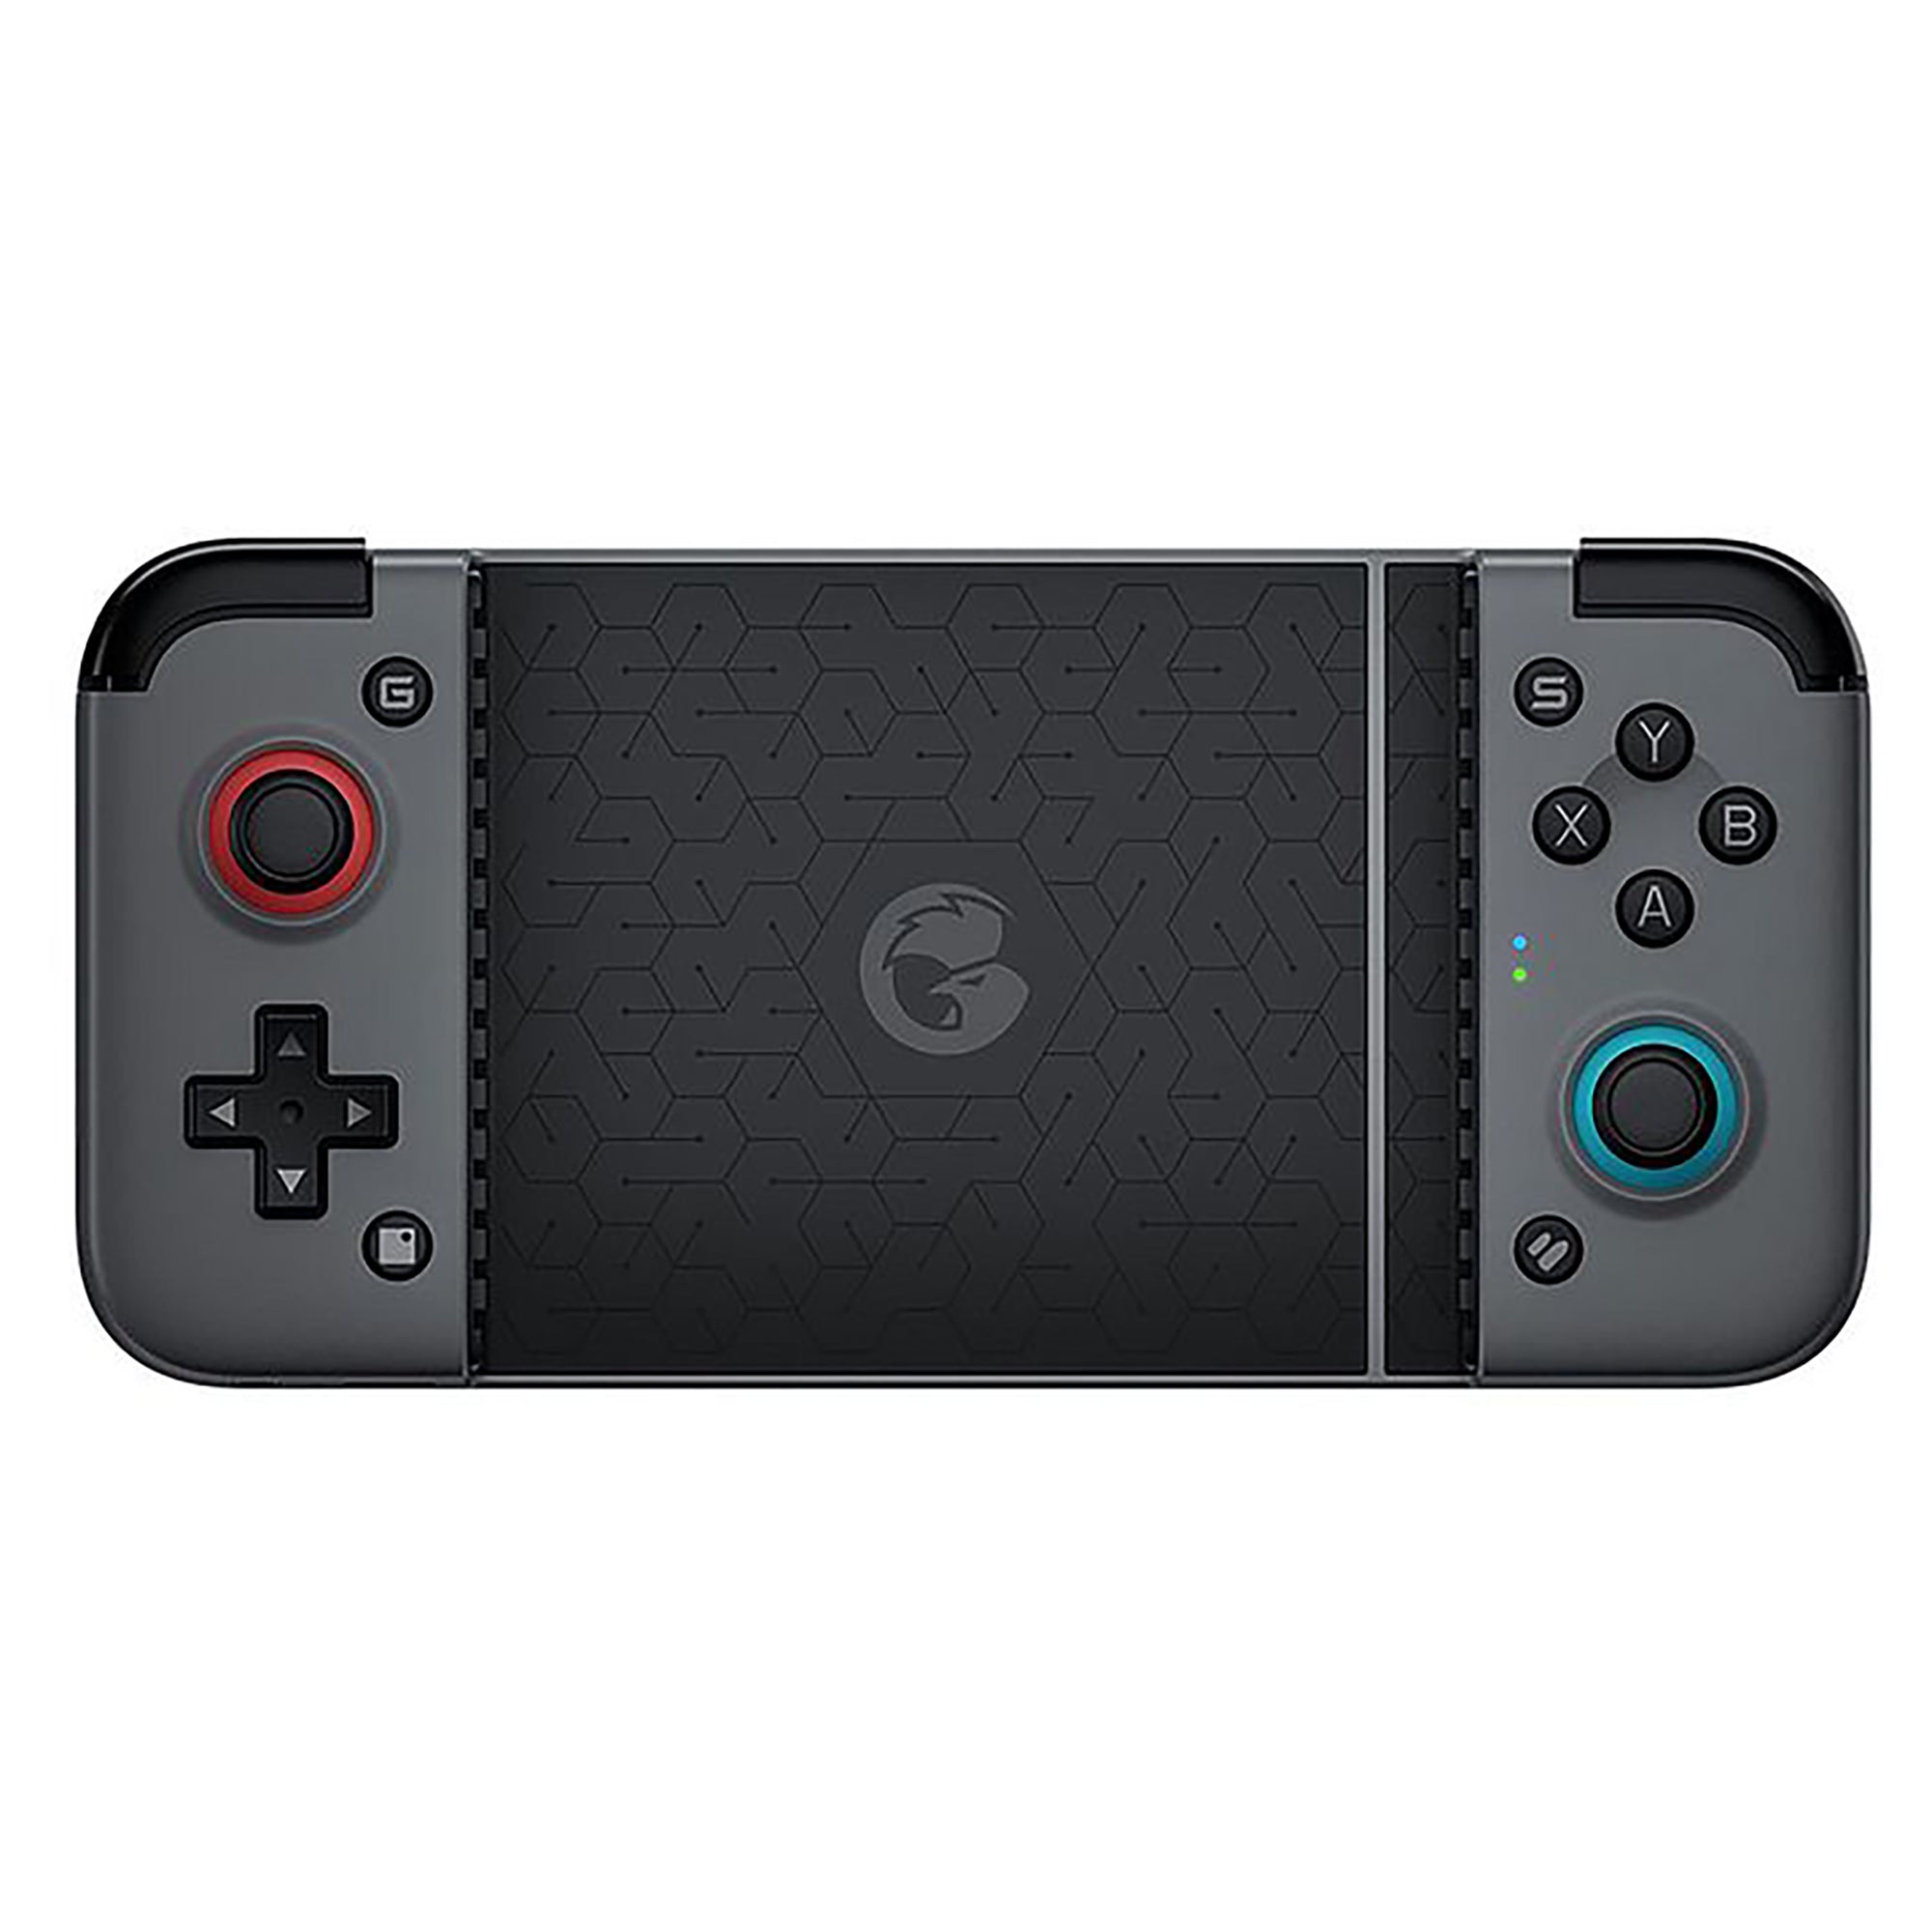 Gamesir X2 Bluetooth Mobile Gaming Controller, Black